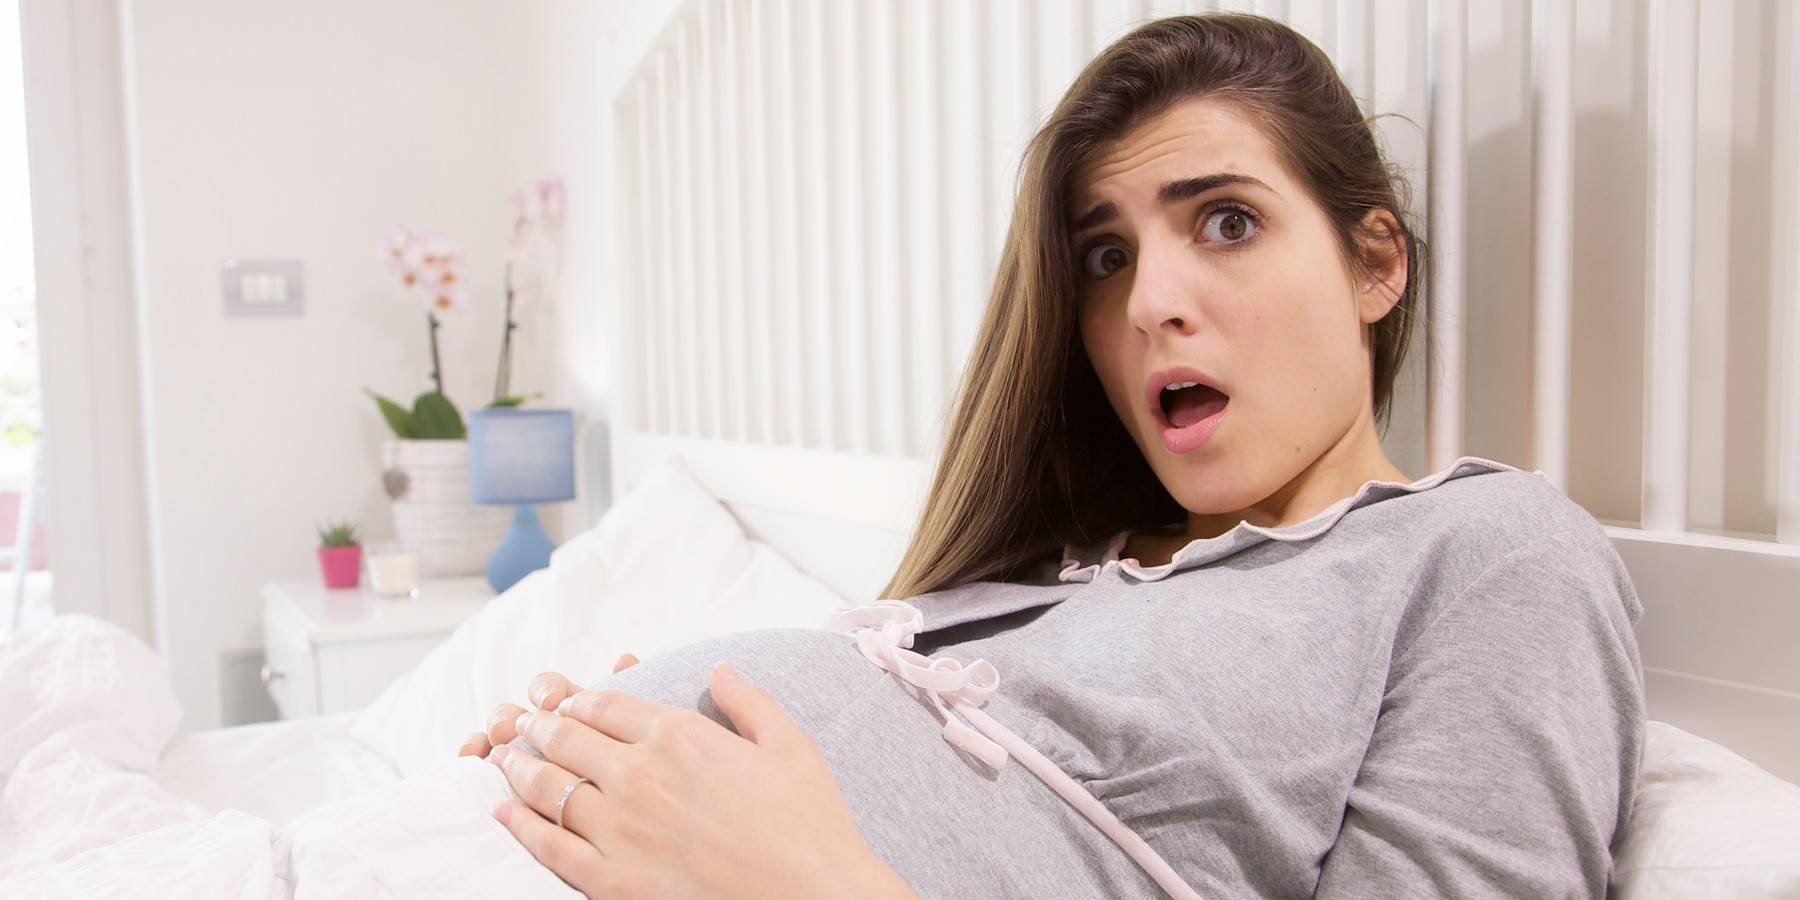 Чего боятся беременные: 5 главных страхов – и как от них избавиться